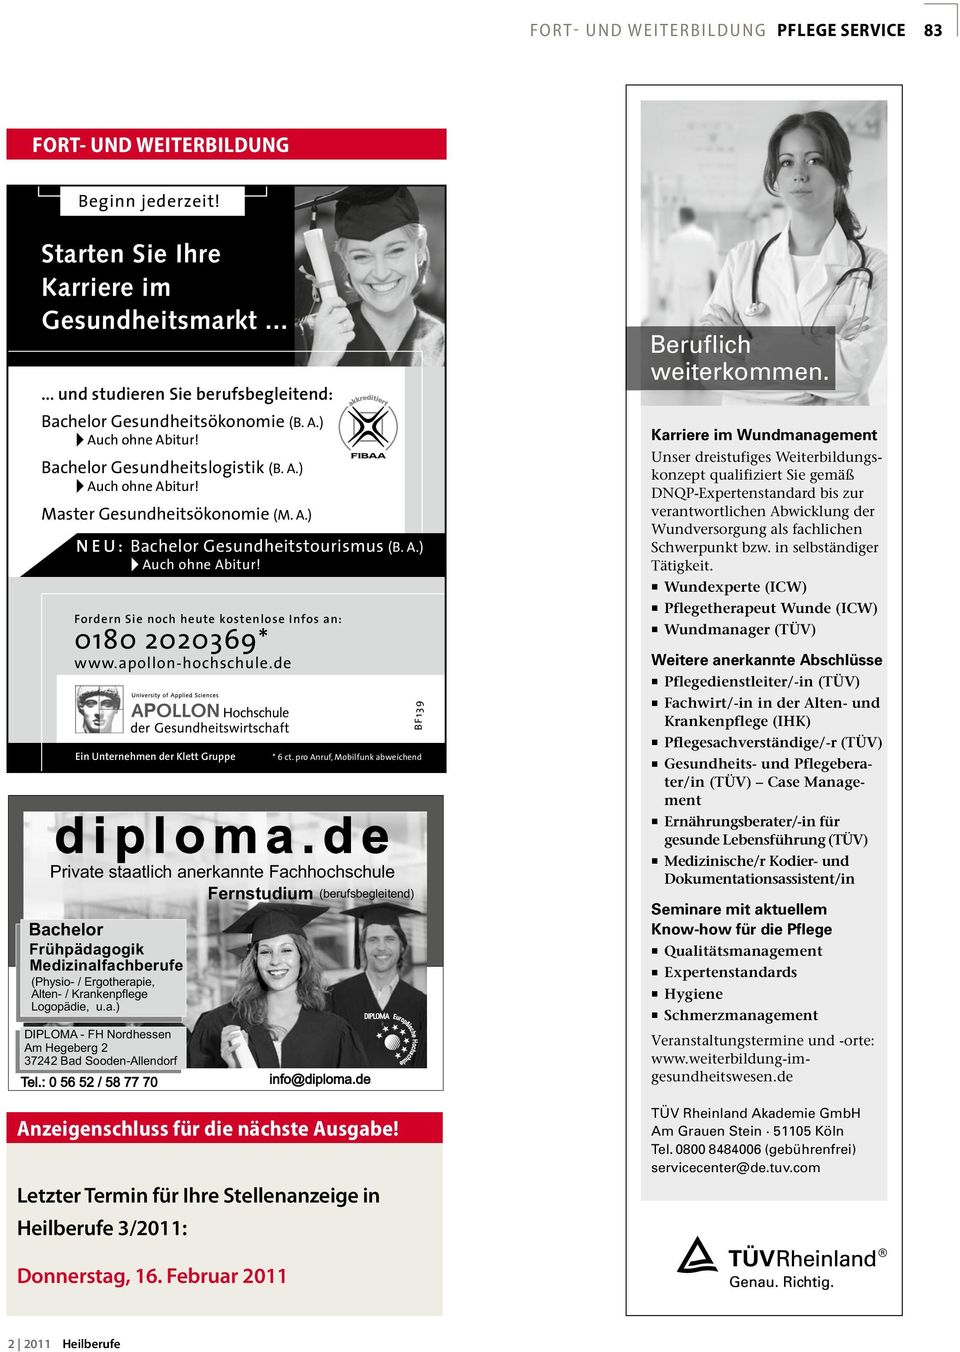 apollon-hochschule.de Ein Unternehmen der Klett Gruppe Anzeigenschluss für die nächste Ausgabe! Letzter Termin für Ihre Stellenanzeige in Heilberufe 3/2011: BF139 * 6 ct.